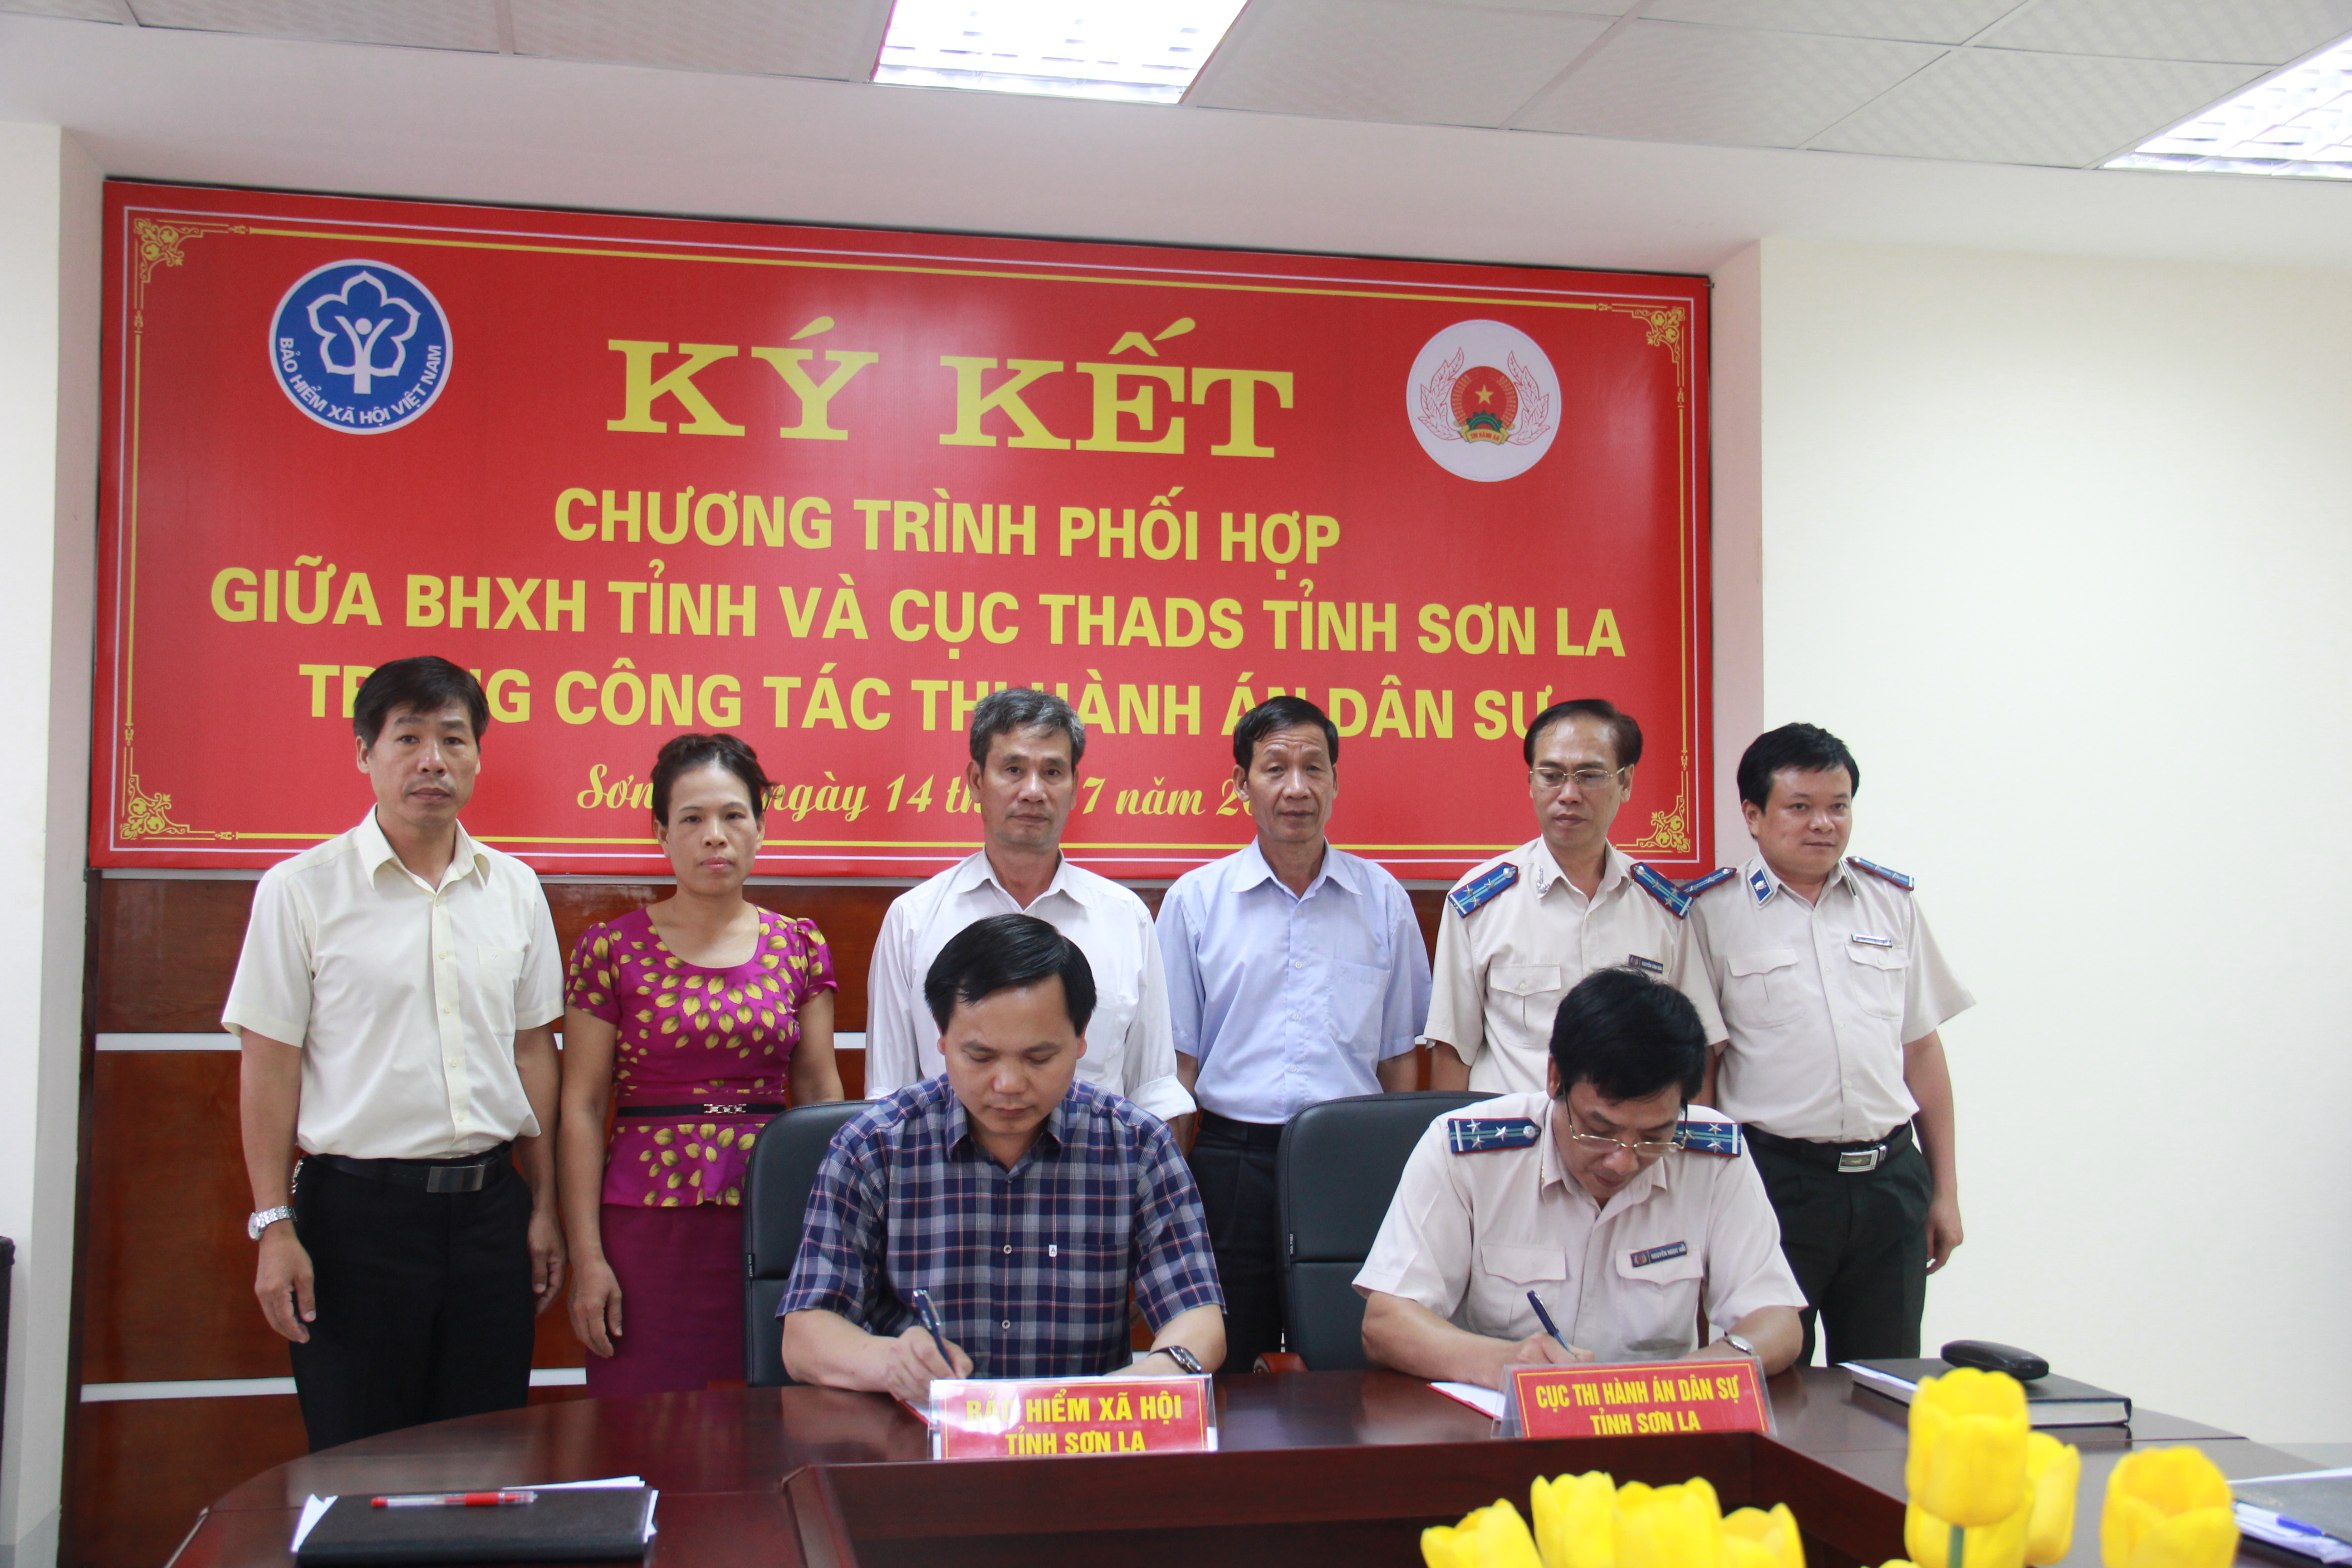 Cục Thi hành án dân sự tỉnh Sơn La và Bảo hiểm xã hội tỉnh tổ chức ký kết chương trình phối hợp liên ngành